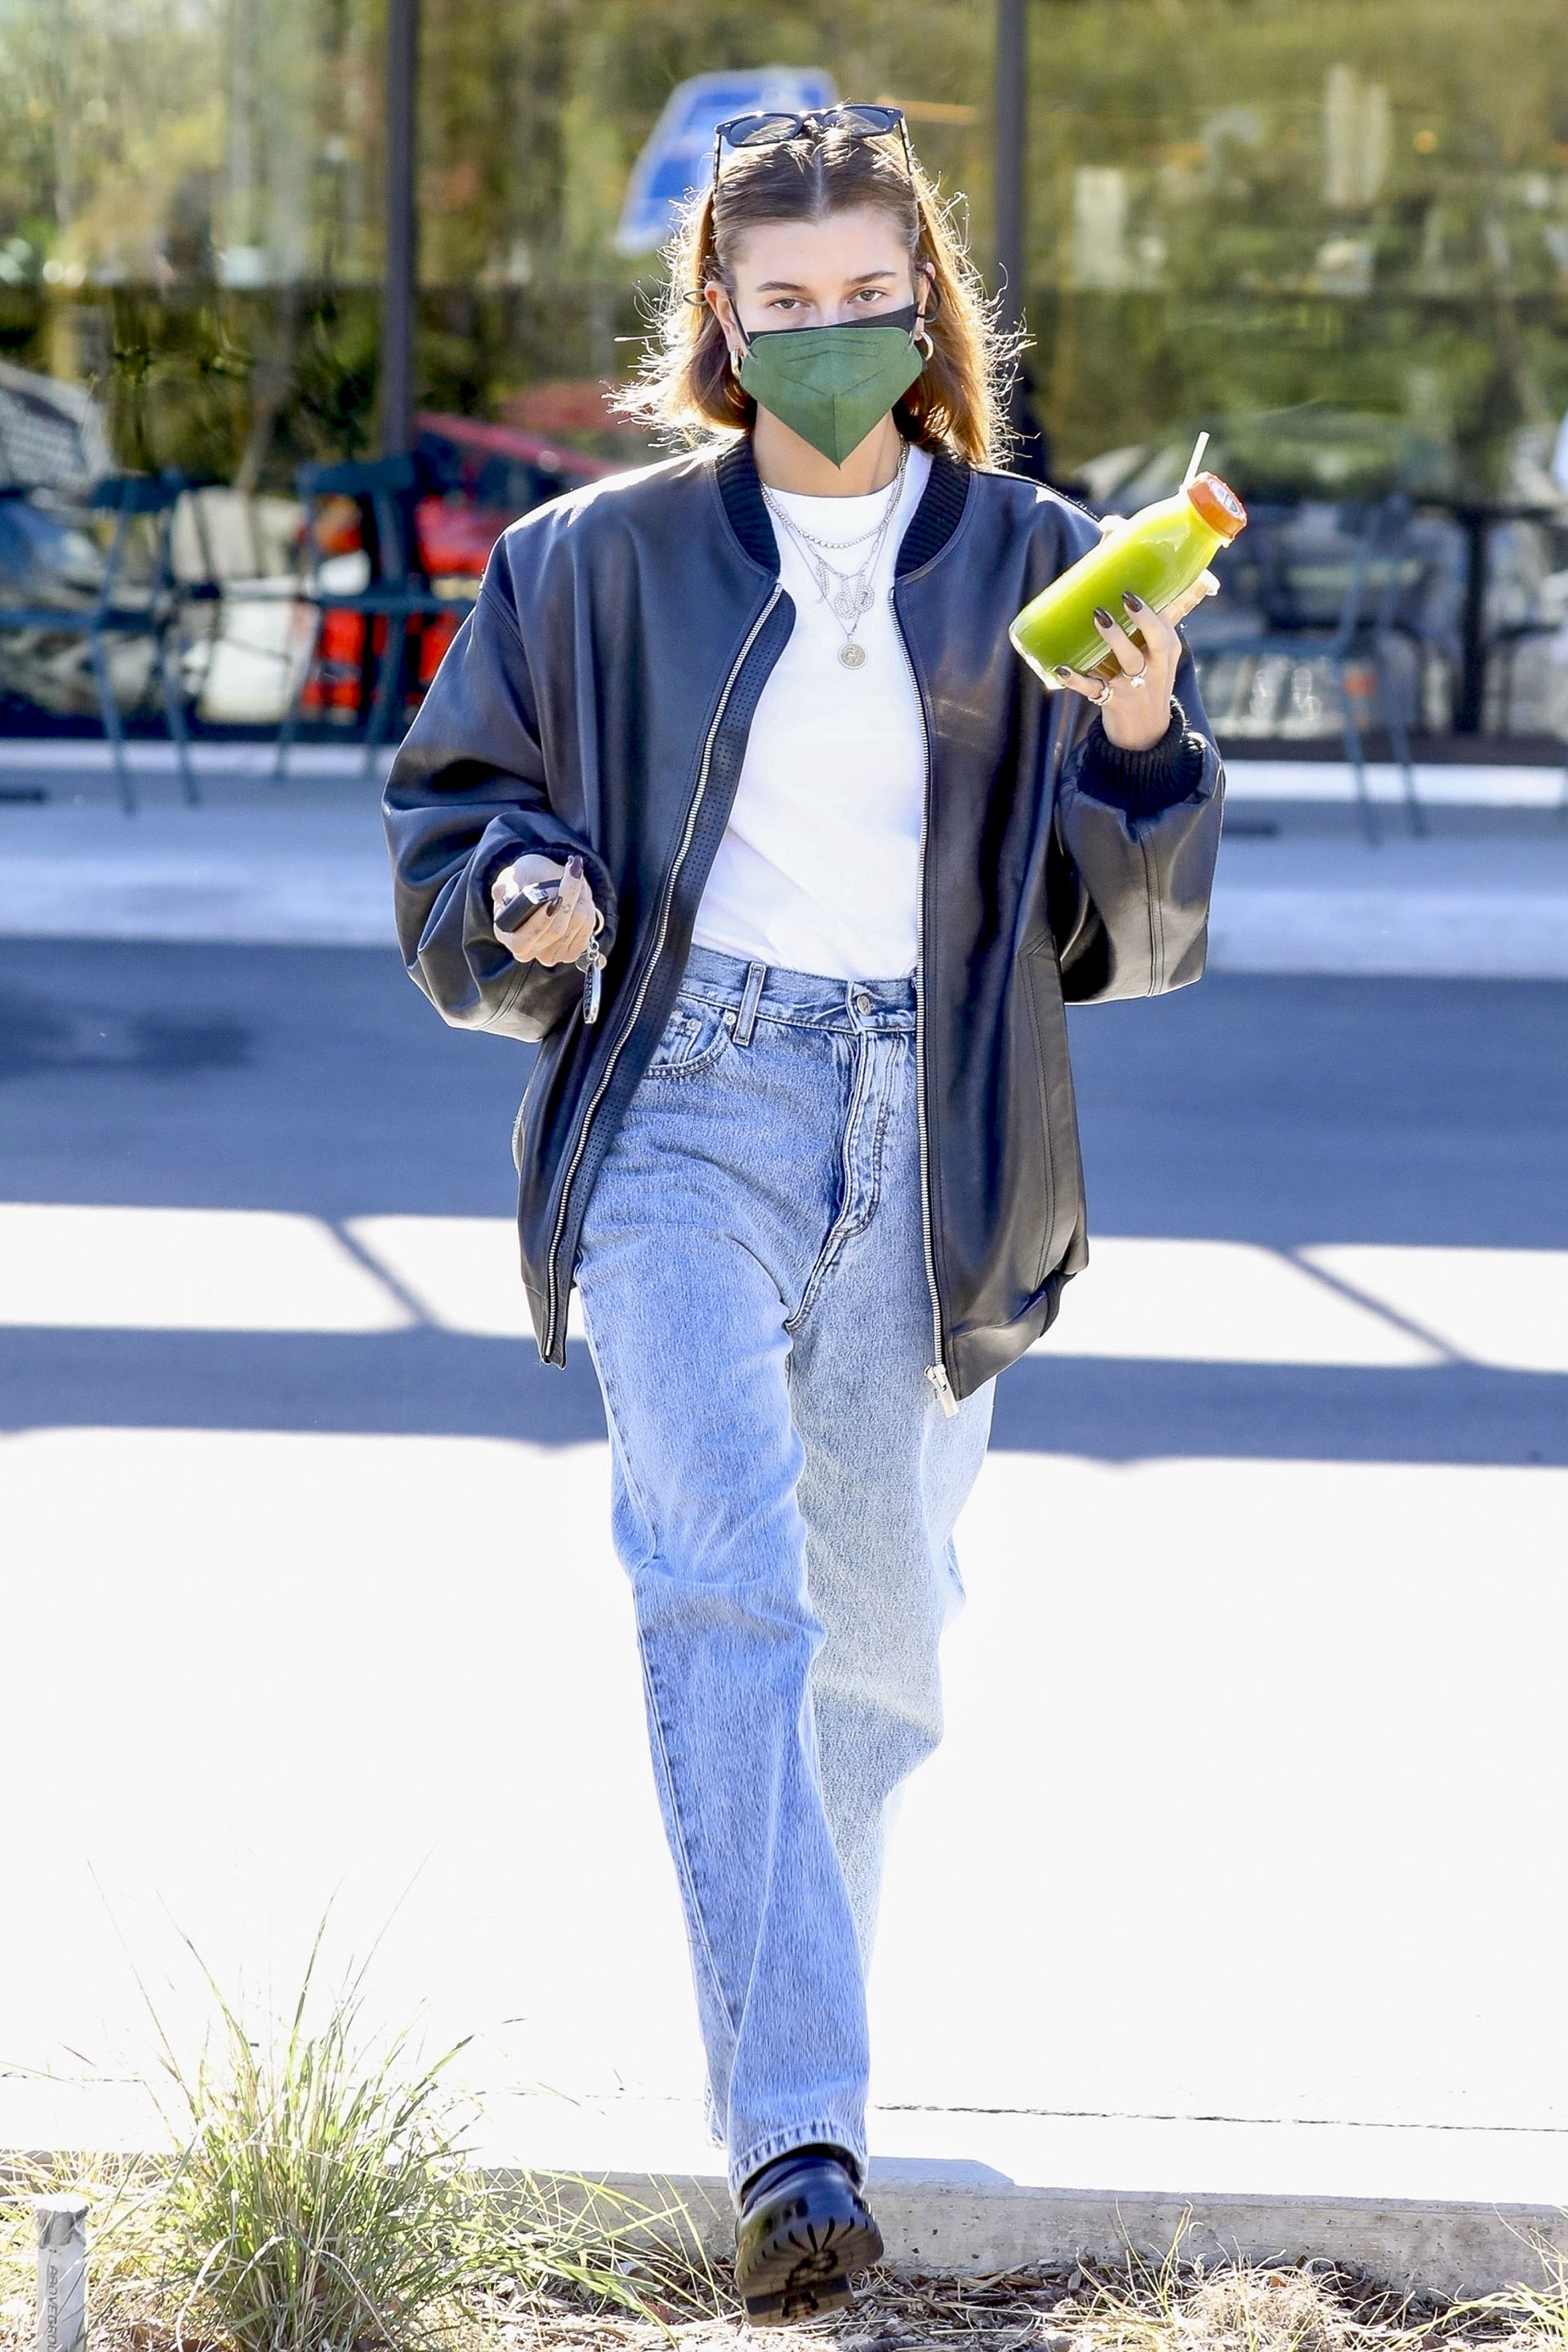 Hailey Bieber fue a comprar bebida para llevar en una reconocida tienda saludable de Los Ángeles. La esposa de Justin Bieber vistió un look casual: remera blanca básica, un jean, y una campera de cuero negra. Además, llevó tapabocas color verde y lentes de sol sobre su cabeza